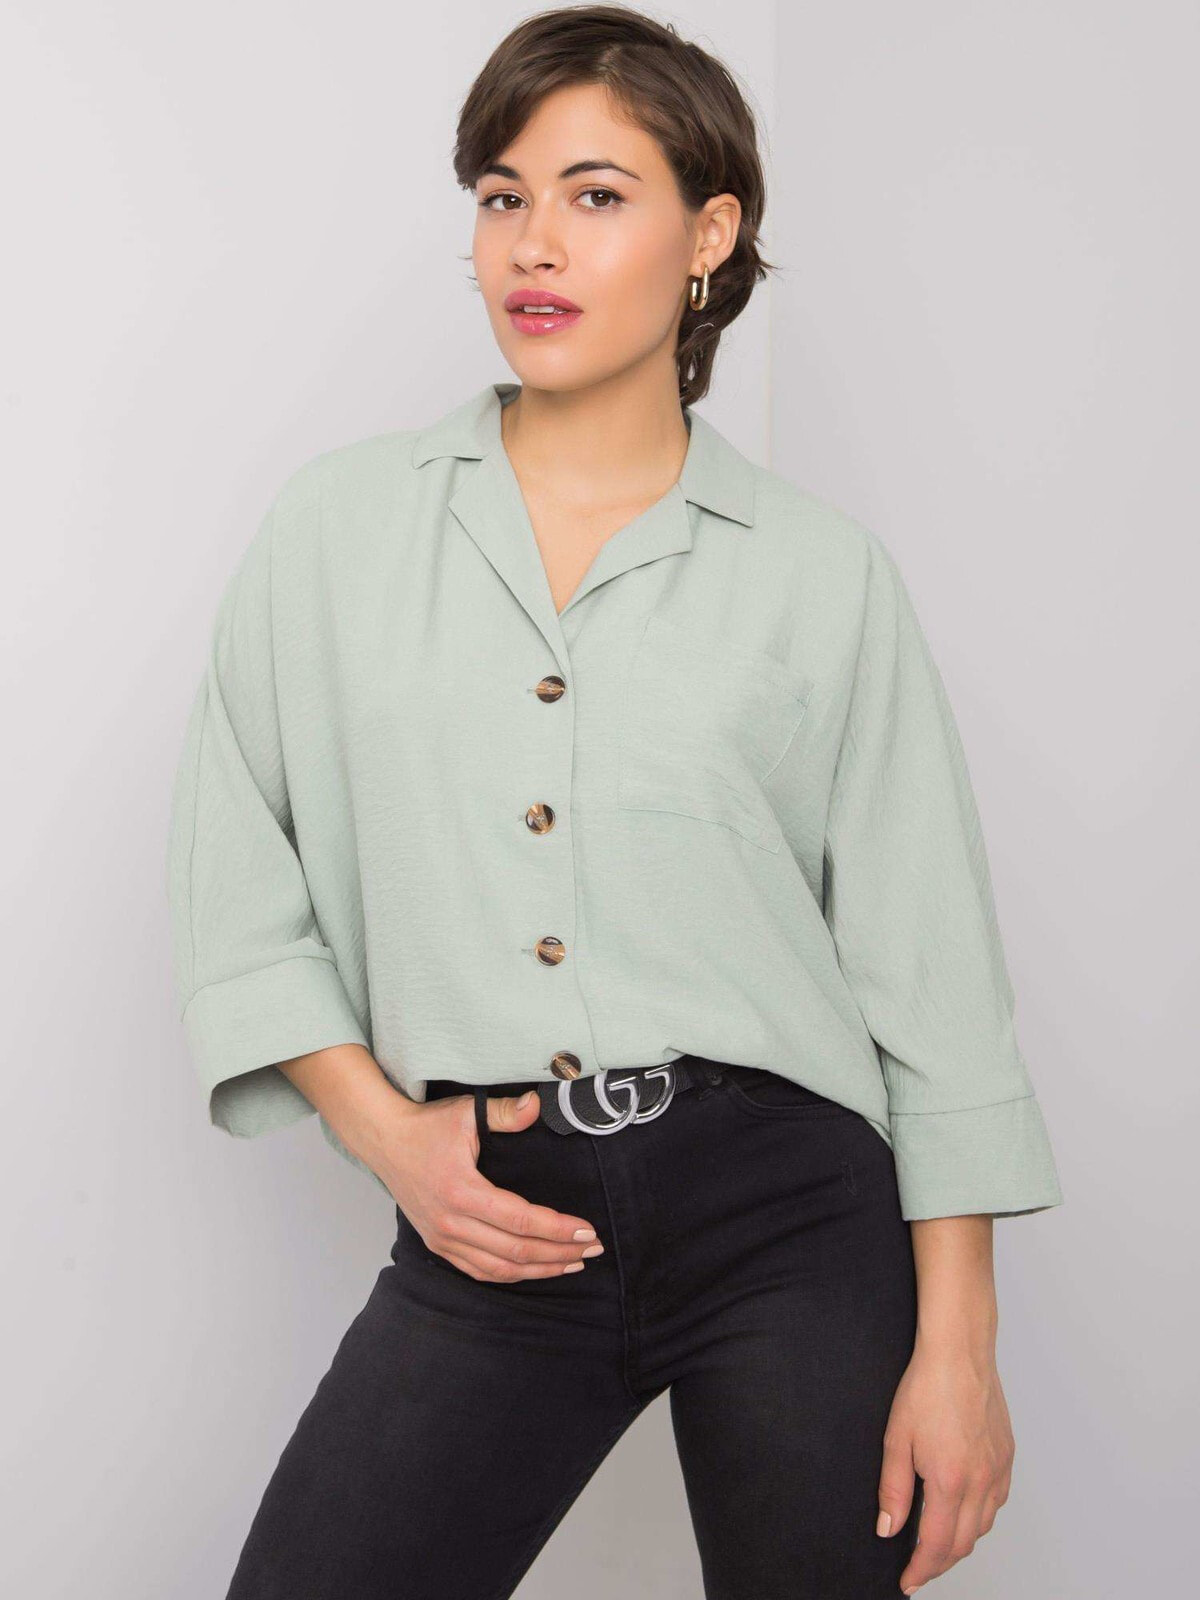 Женская рубашка свободного кроя с объемным рукавом 3/4 мятная Factory Price